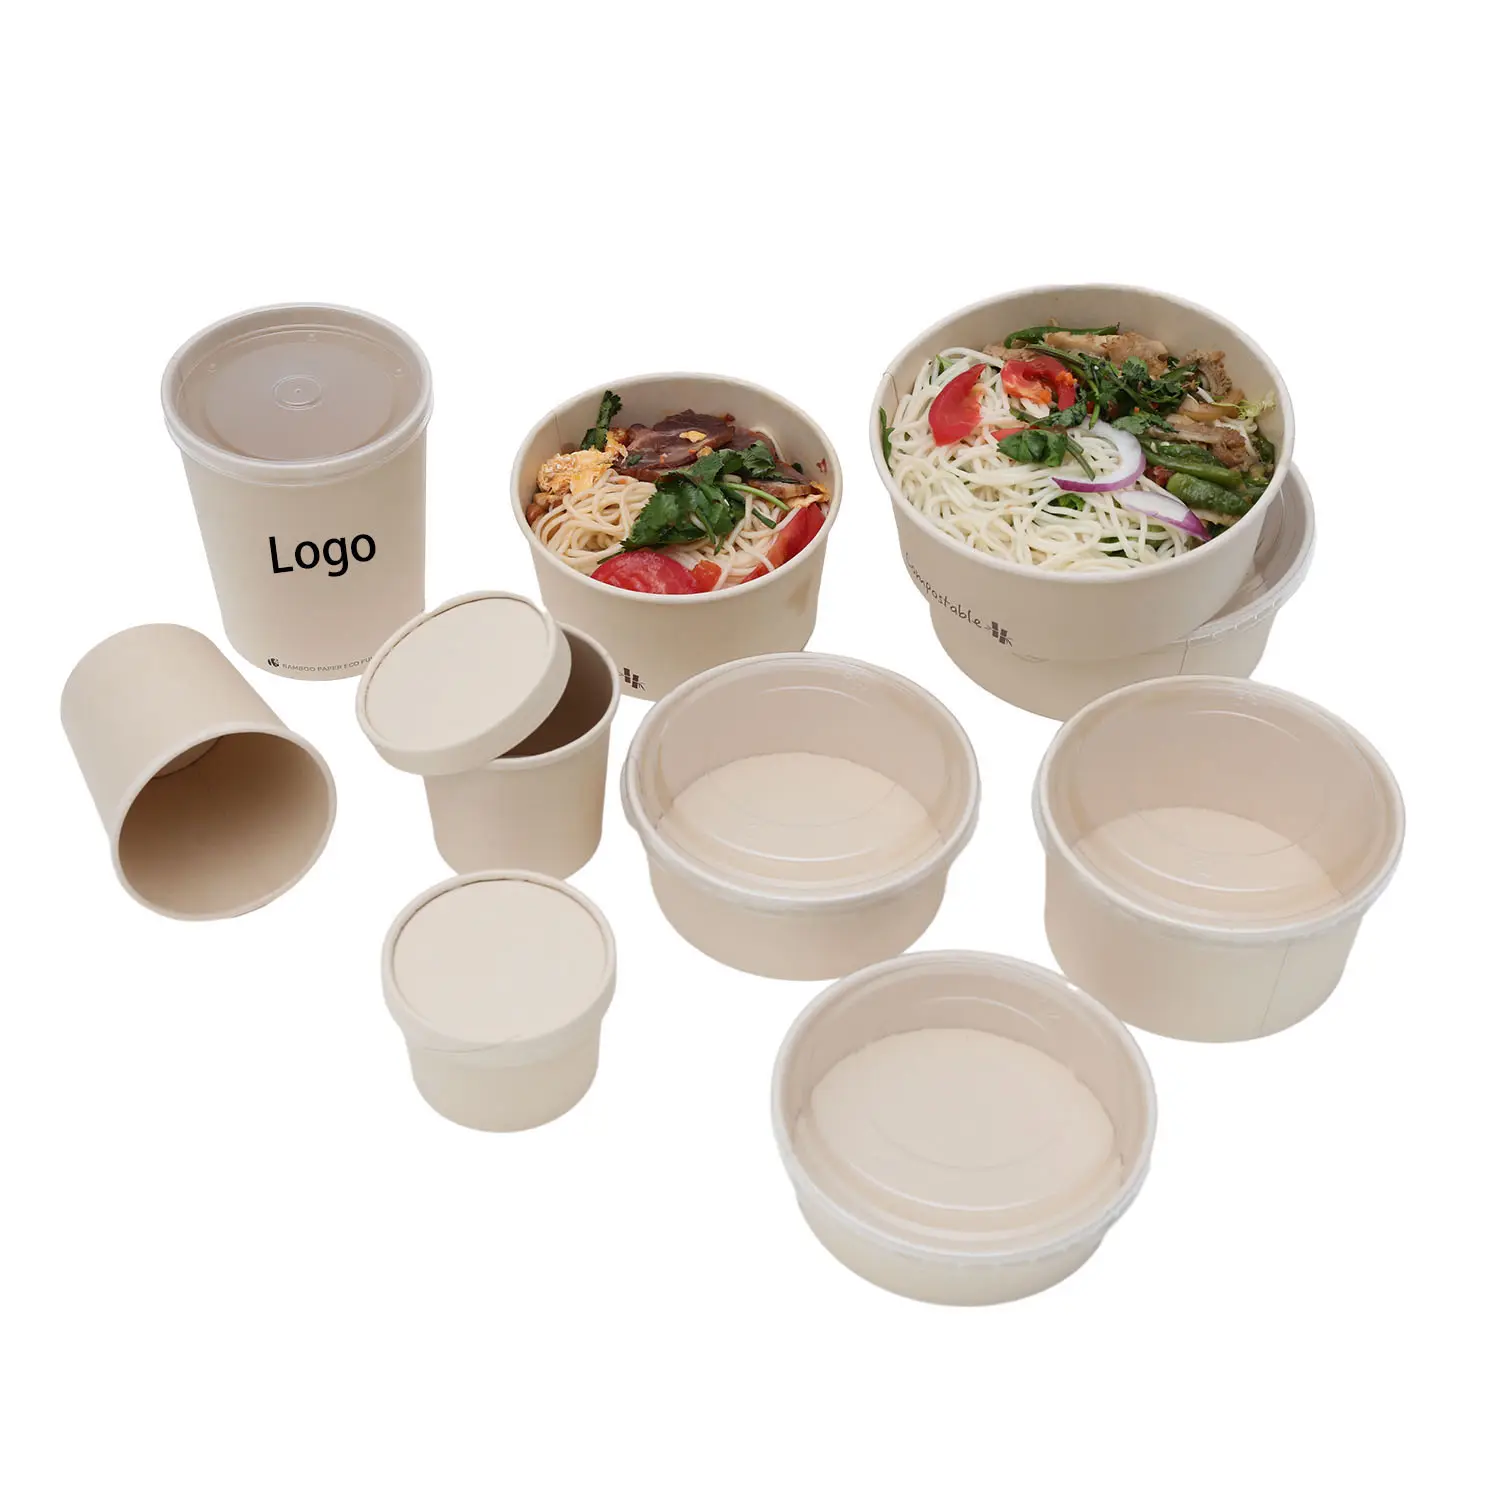 Minlo umweltfreundliche biologisch abbaubare individuell bedruckte Speisen-Suppen-Salatschüssel aus Kraftpapier Schüssel individuell angepasst